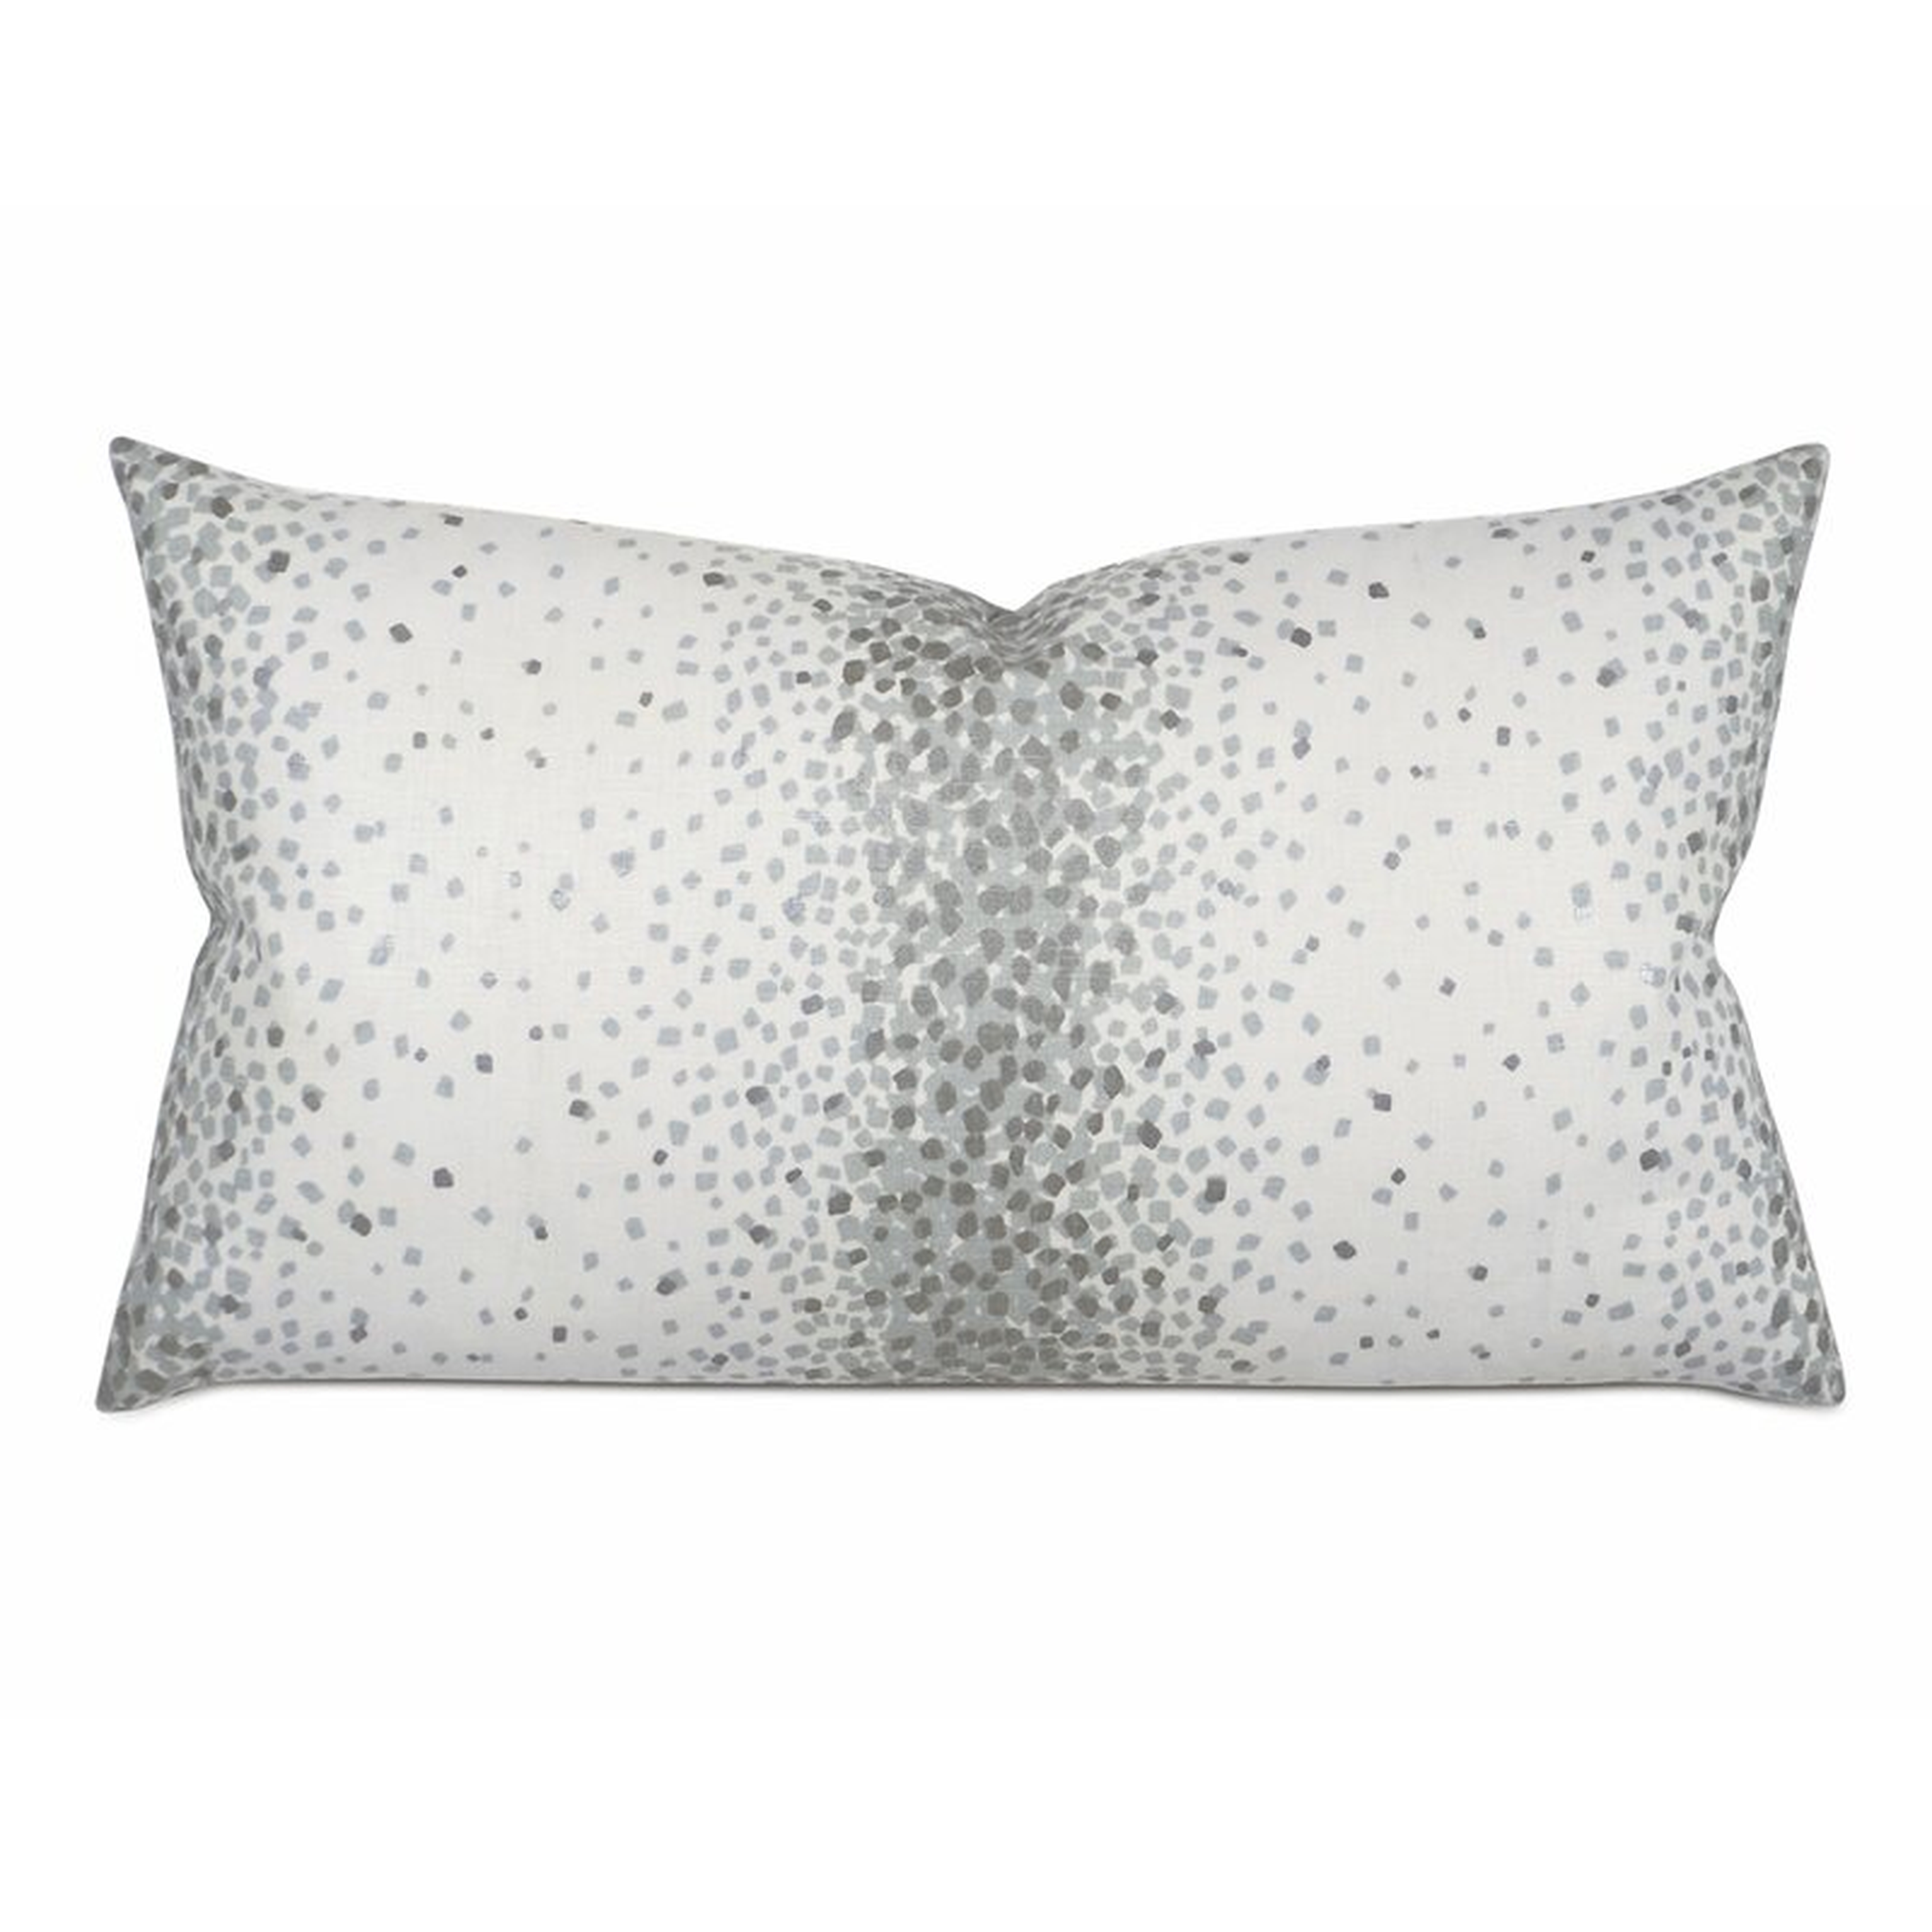 Eastern Accents Rosalynn Rectangular 100% Linen Pillow Cover & Insert - Perigold